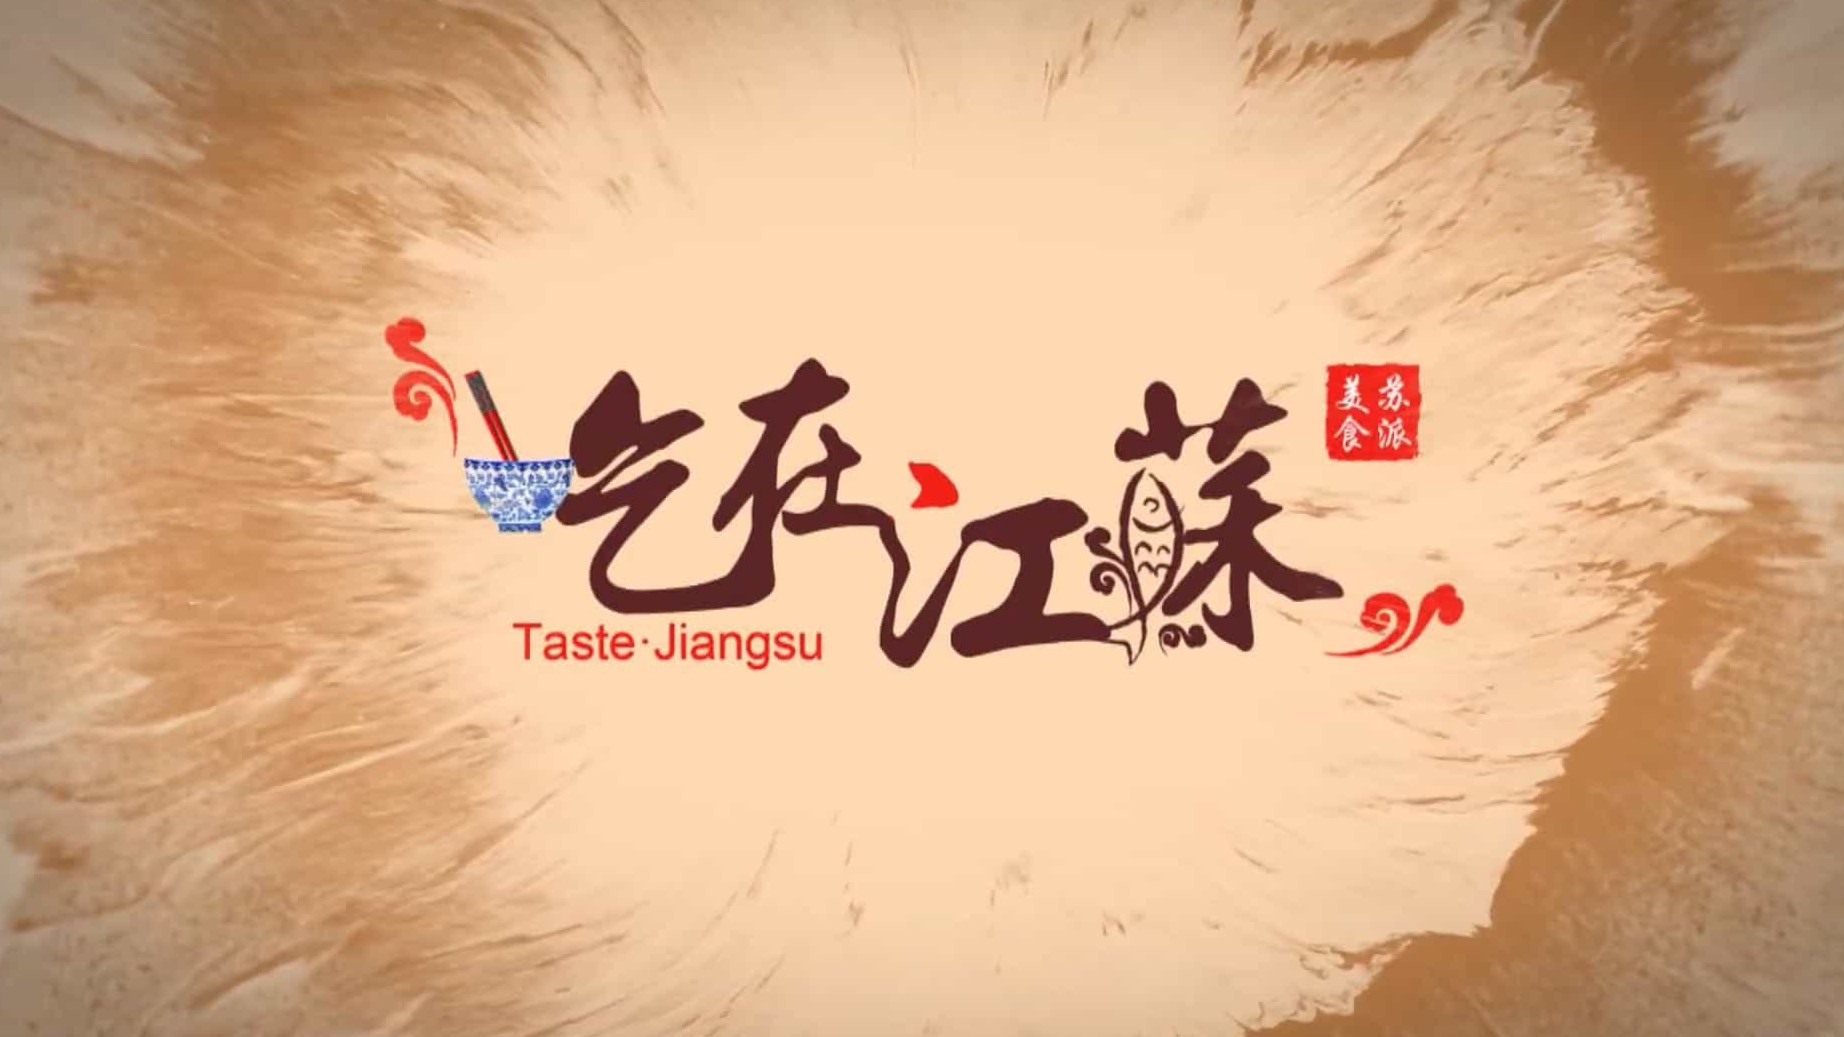 江苏美食纪录片/中国美食系列《吃在江苏 Taste · Jiangsu》全8集 国语中字 1080P高清下载